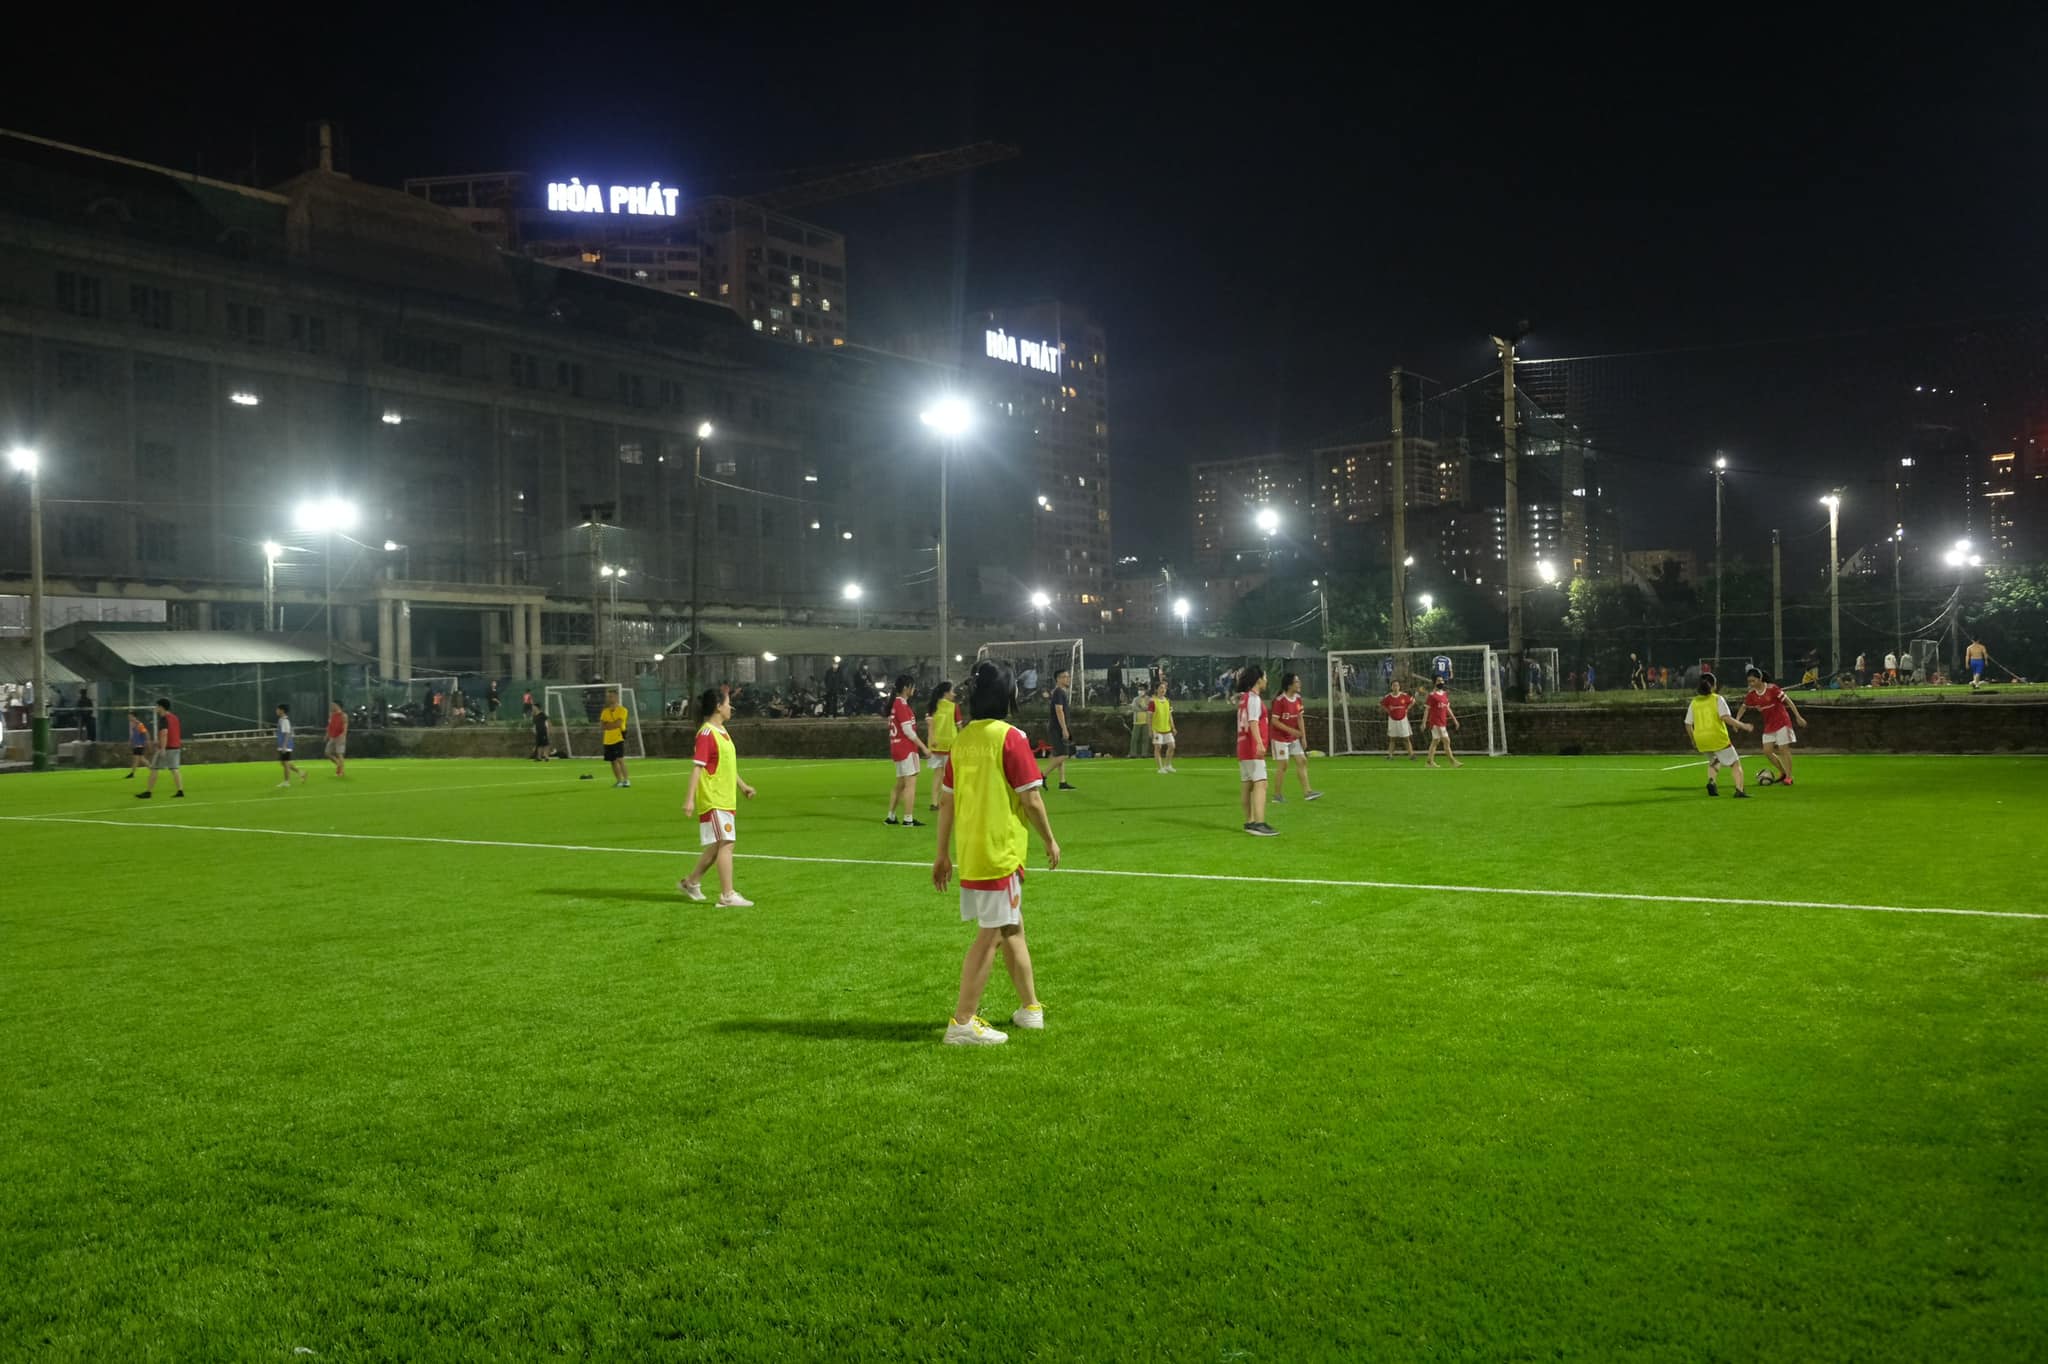 Tái khởi động đội bóng đá nữ Thái Minh